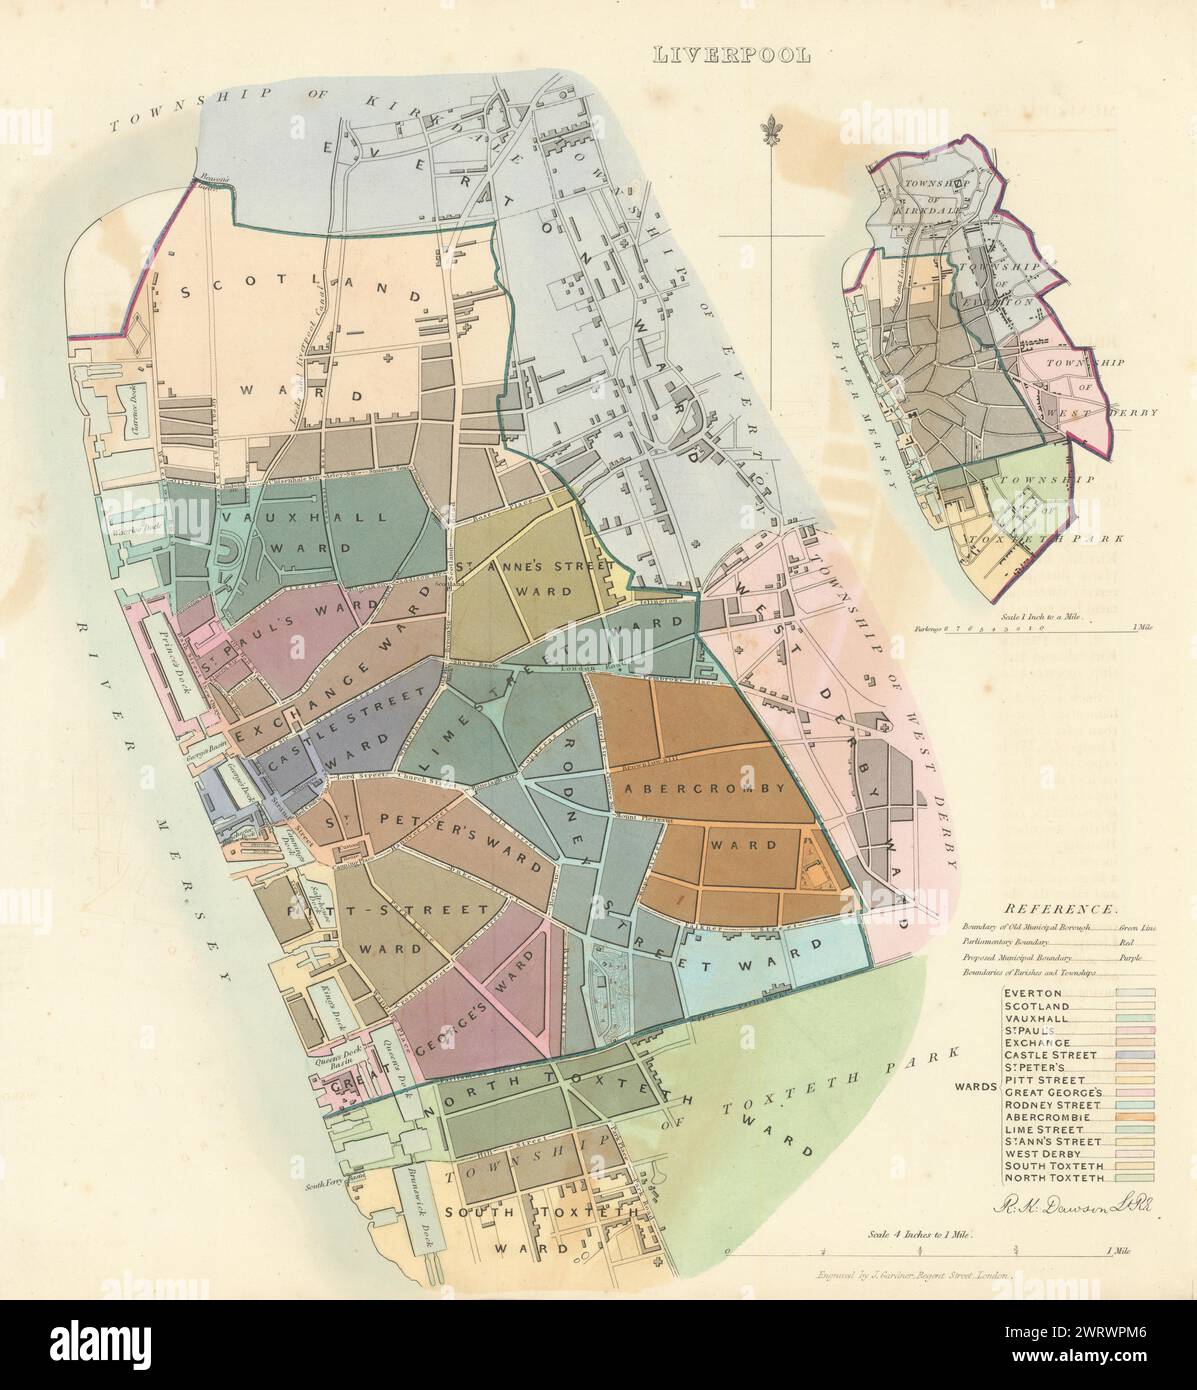 LIVERPOOL Gemeinde/Stadt/Stadt zu planen. Grenzkommission Liverpool DAWSON 1837 Karte Stockfoto